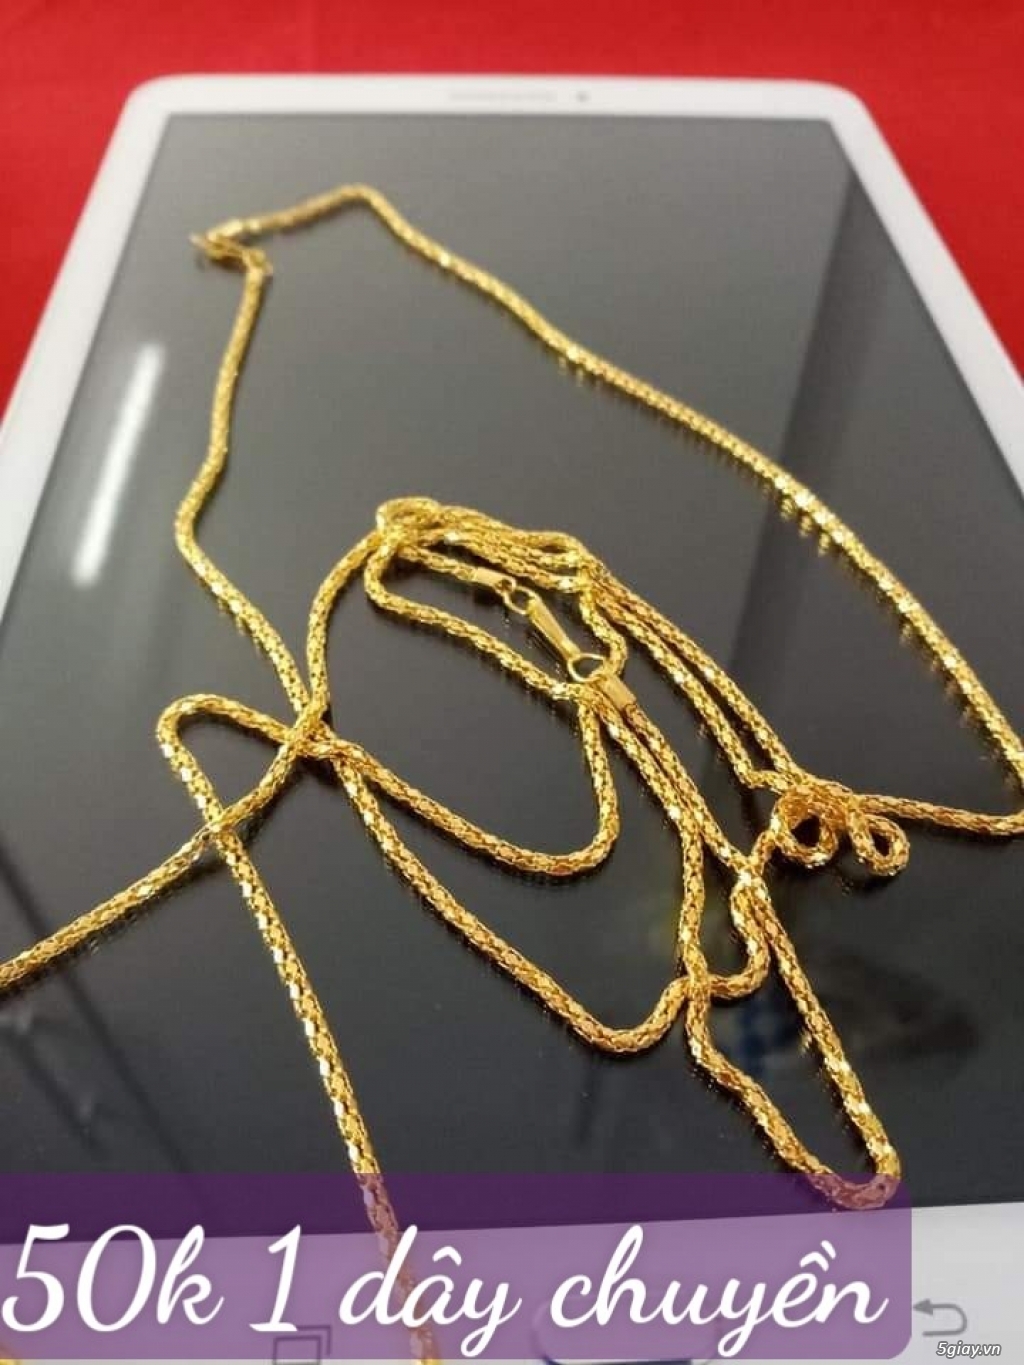 Bán dây chuyền mạ vàng dùng đeo hàng ngày giá 50k/ 1 dây ( có shopee) - 6